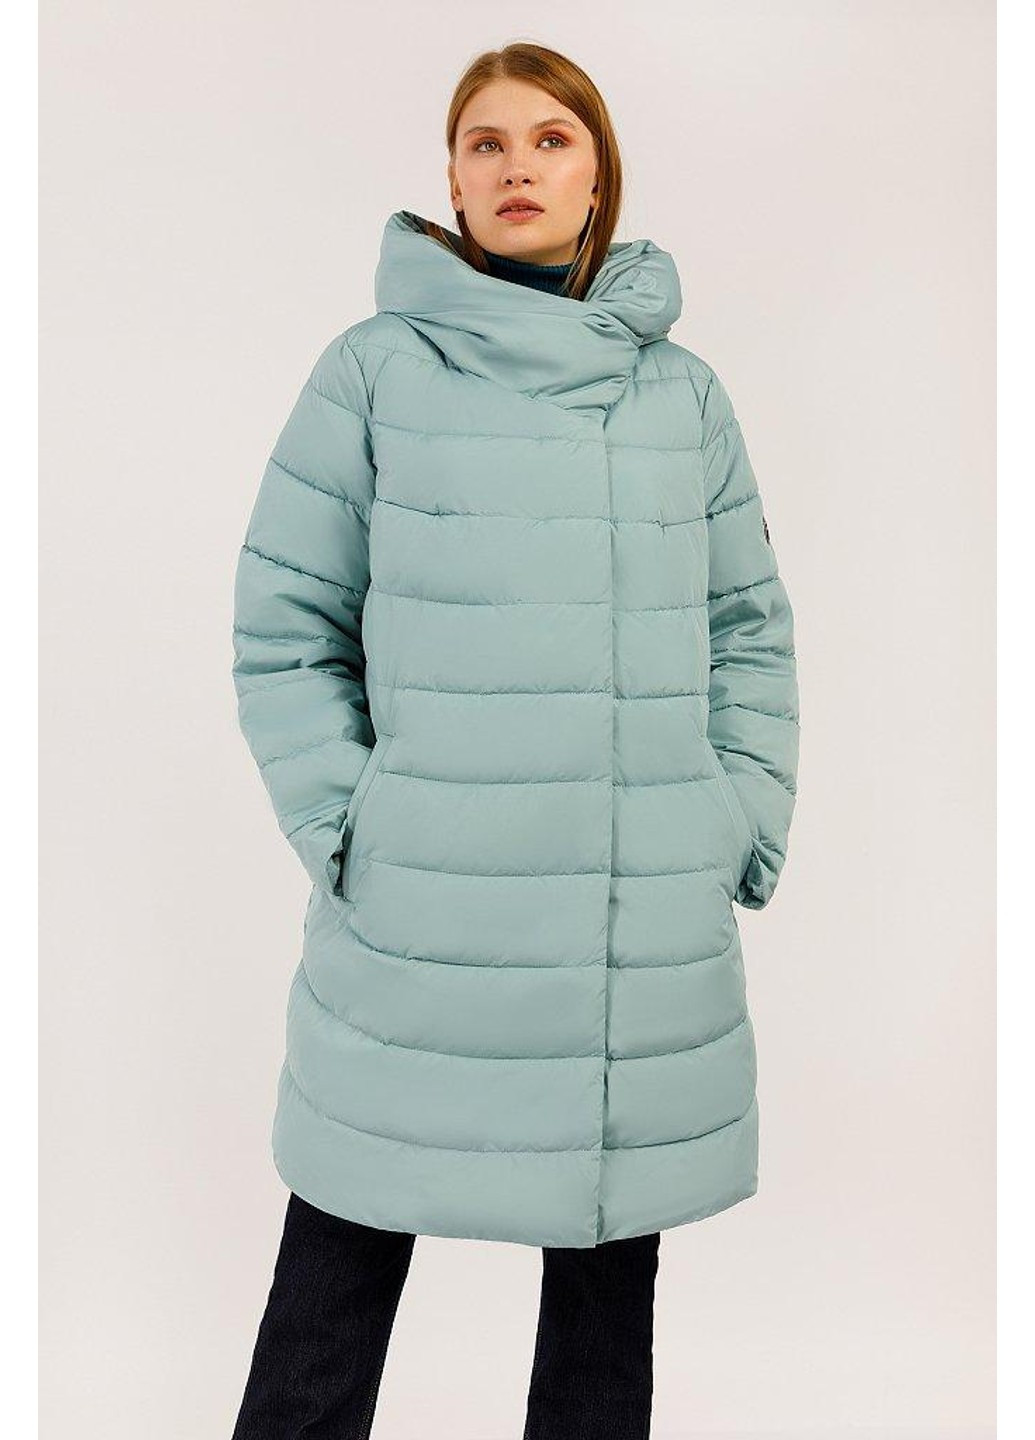 Бірюзова зимня зимова куртка w19-32020-903 Finn Flare